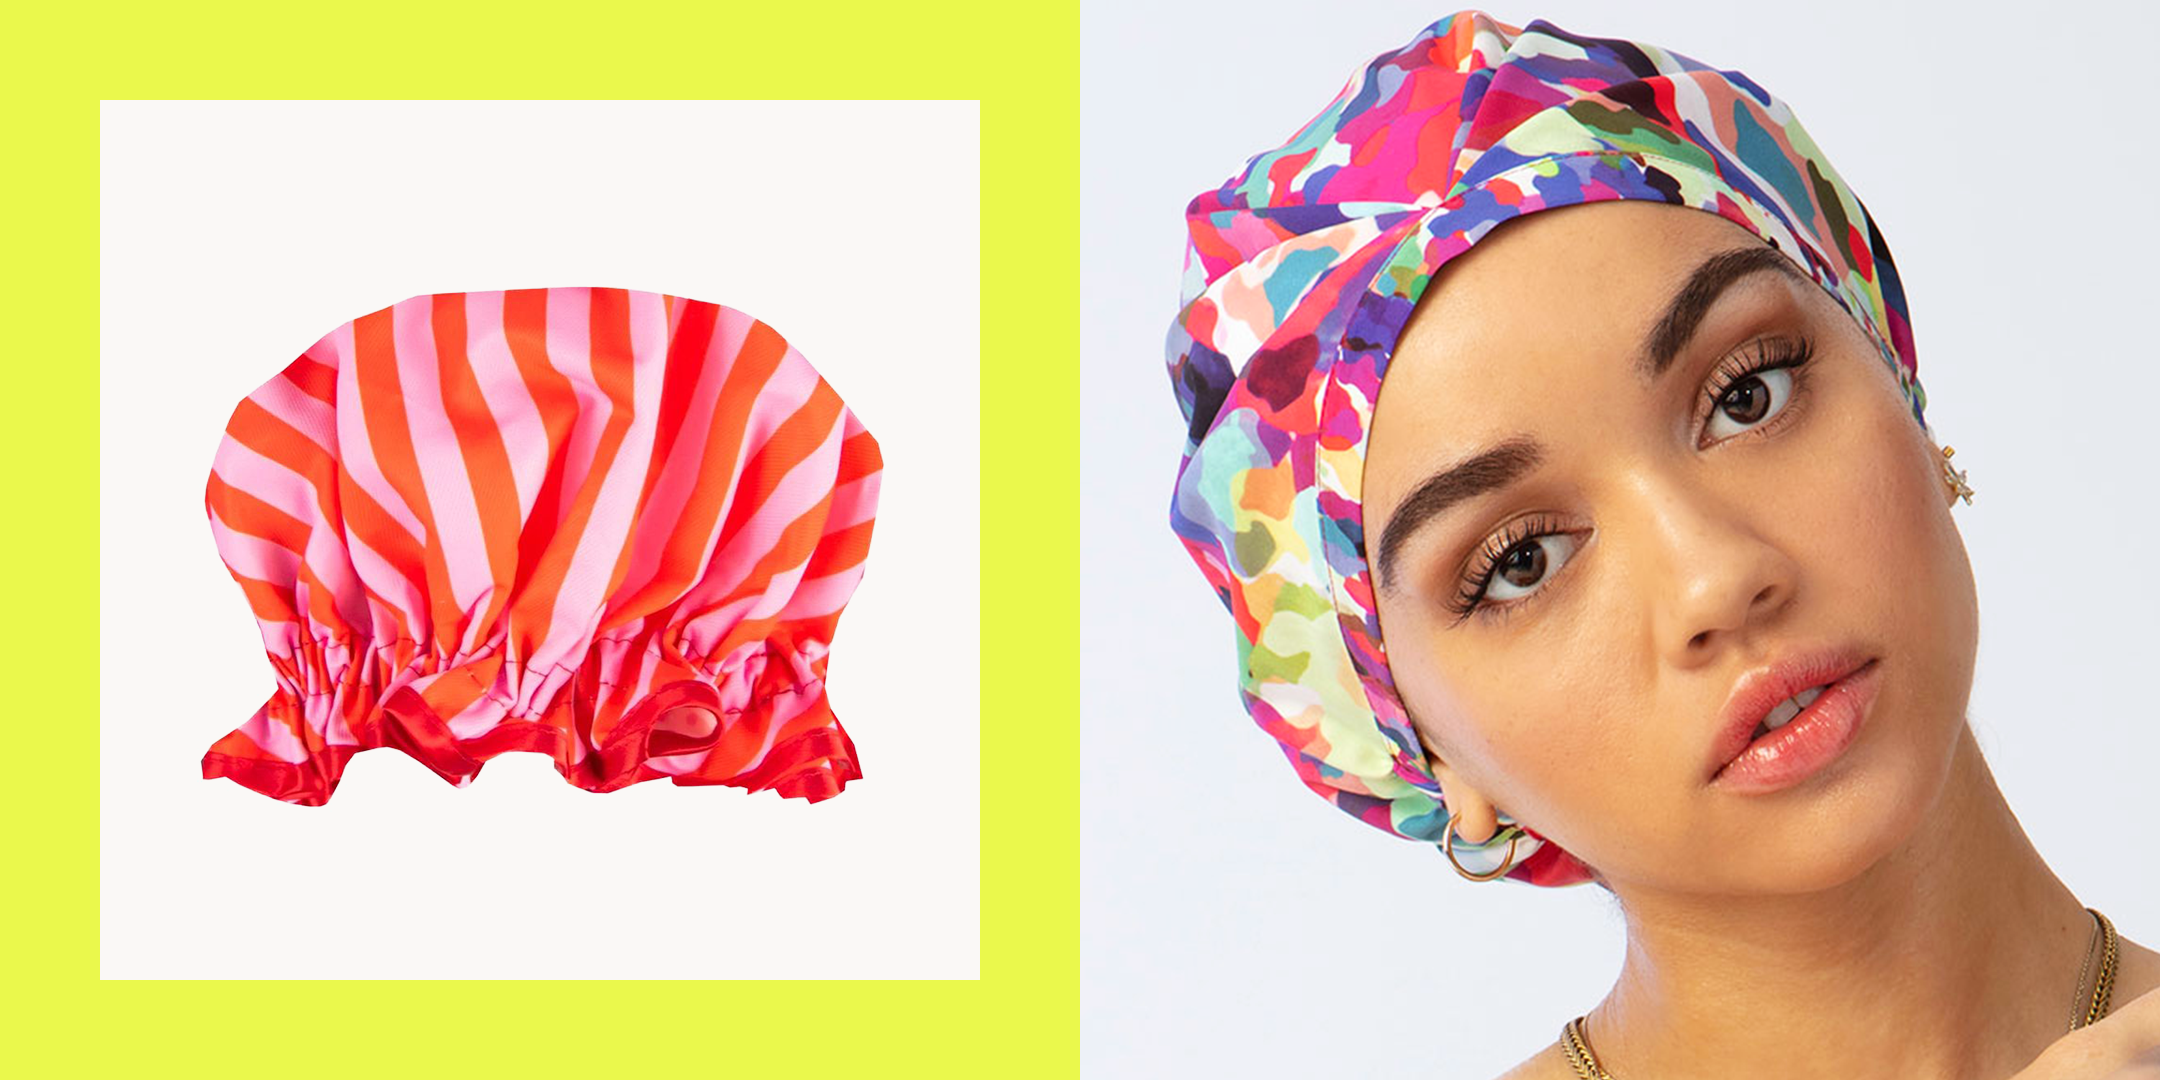 Kitsch Luxury Shower Cap for Women Waterproof - Reusable Shower Cap | Hair  Cap for Shower | Holiday Gift | Waterproof Hair Shower Caps for Long Hair 